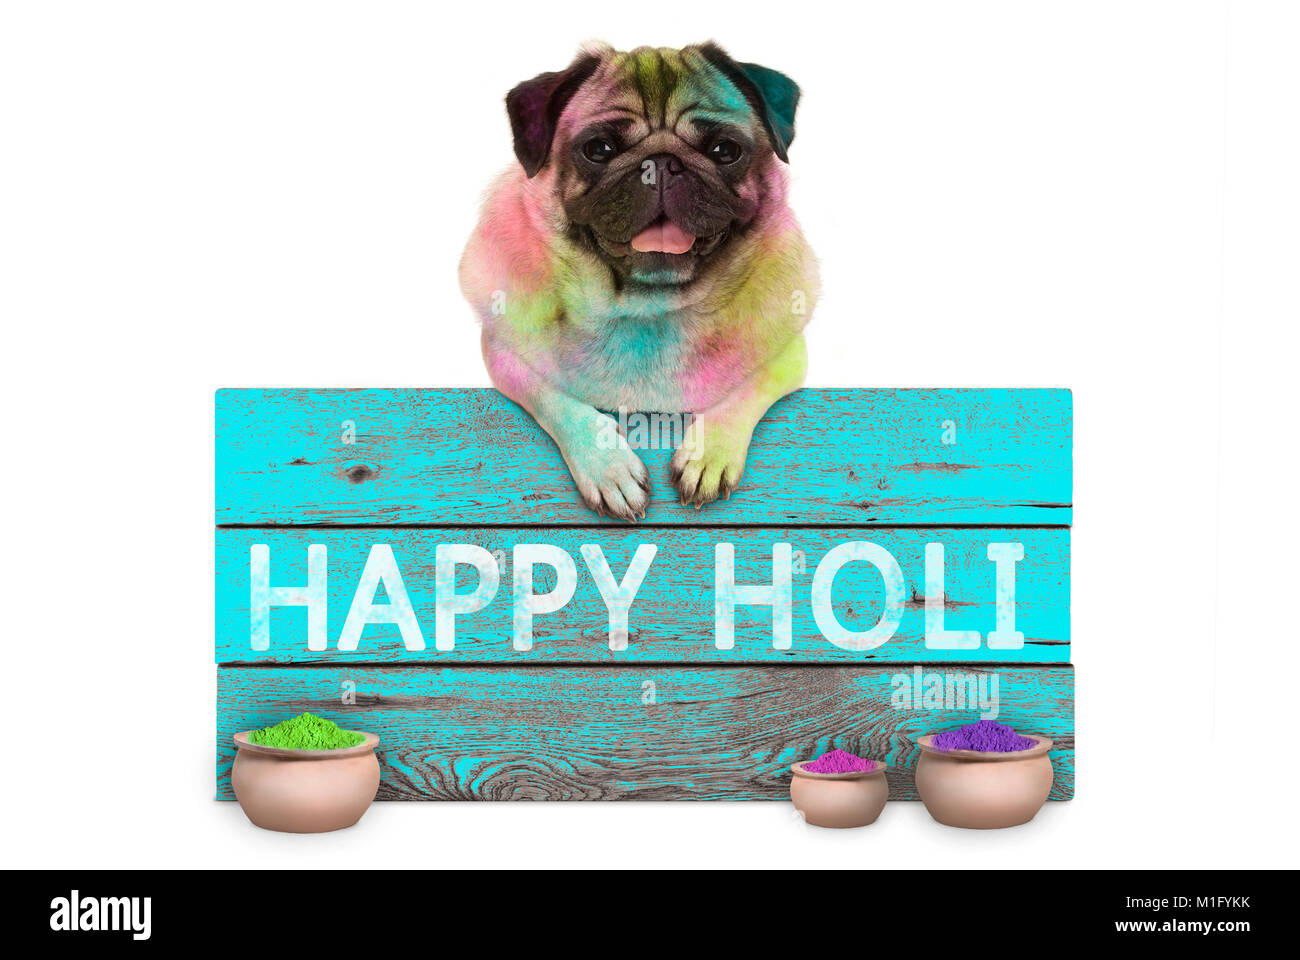 Festival de couleurs superbe chiot pug dog, couvert de poudre de couleur, suspendu à signer avec happy Holi, isolé sur fond blanc Banque D'Images